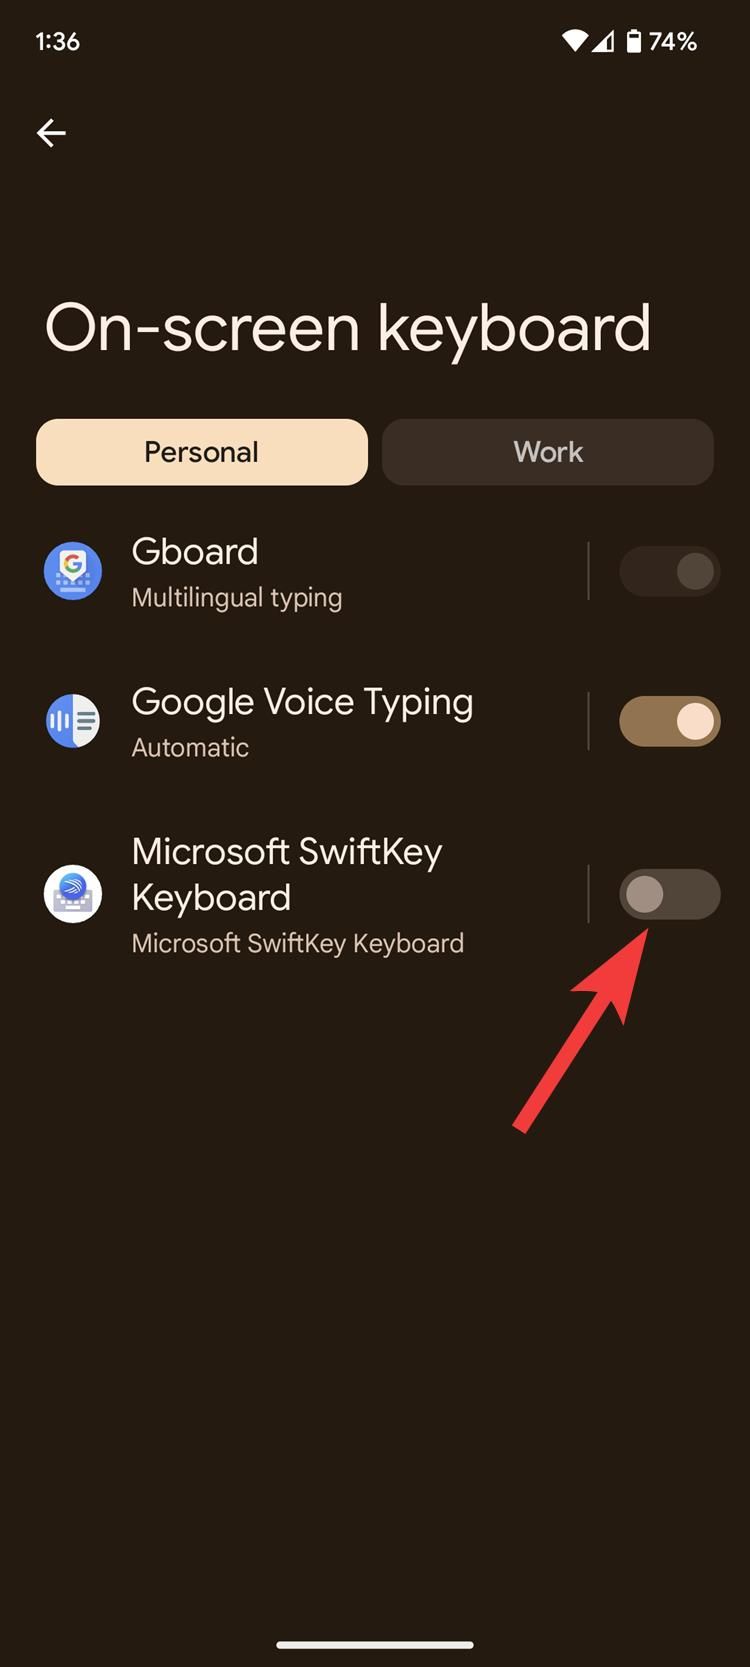 captura de tela mostrando o botão de alternância do teclado na tela para o aplicativo de teclado SwiftKey no Android 